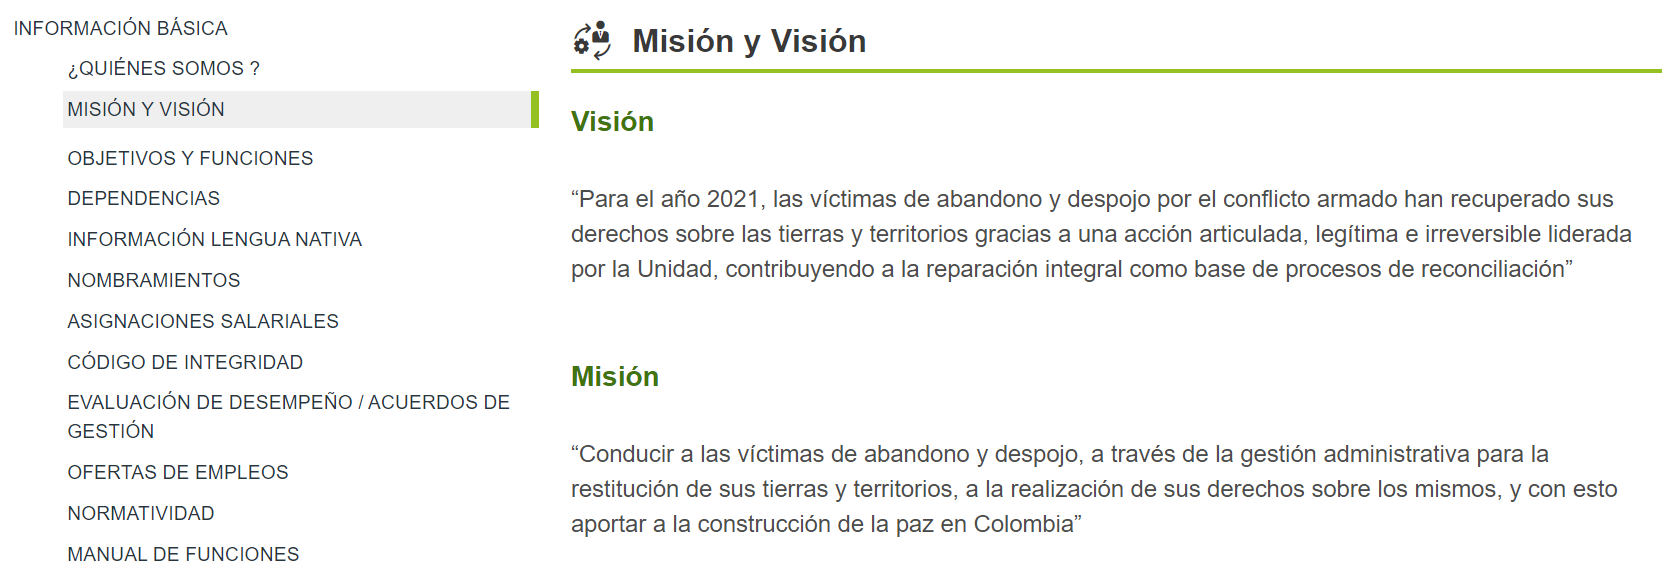 Imagen página misión y visión